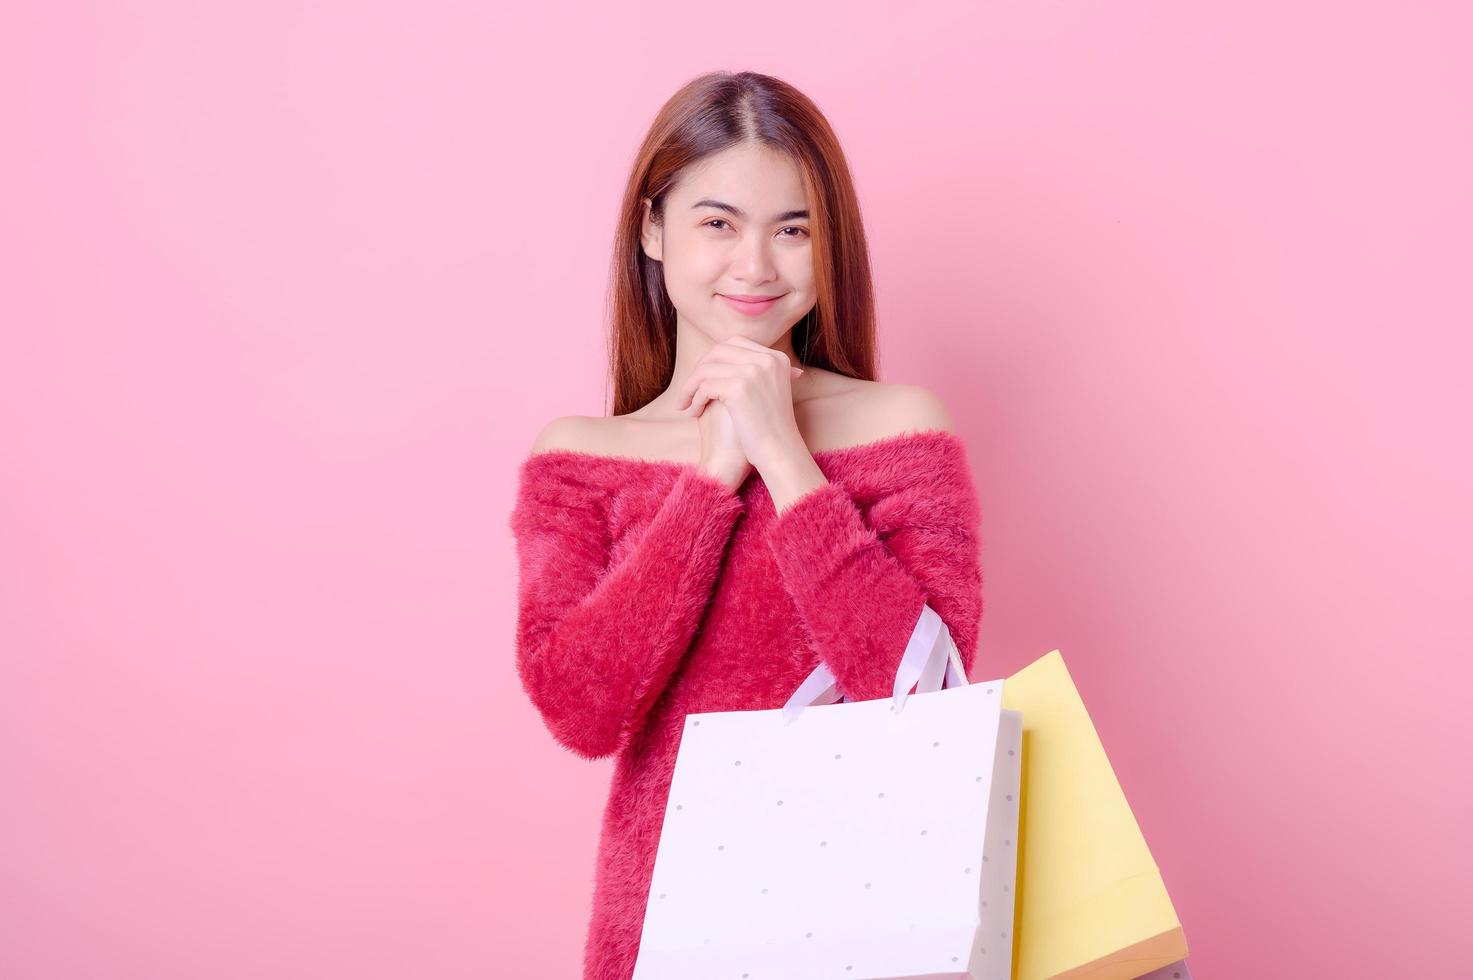 une belle femme asiatique est heureuse quand il y a un motif d'achat pour acheter les produits qu'elle veut, comme une promotion à prix réduit photo